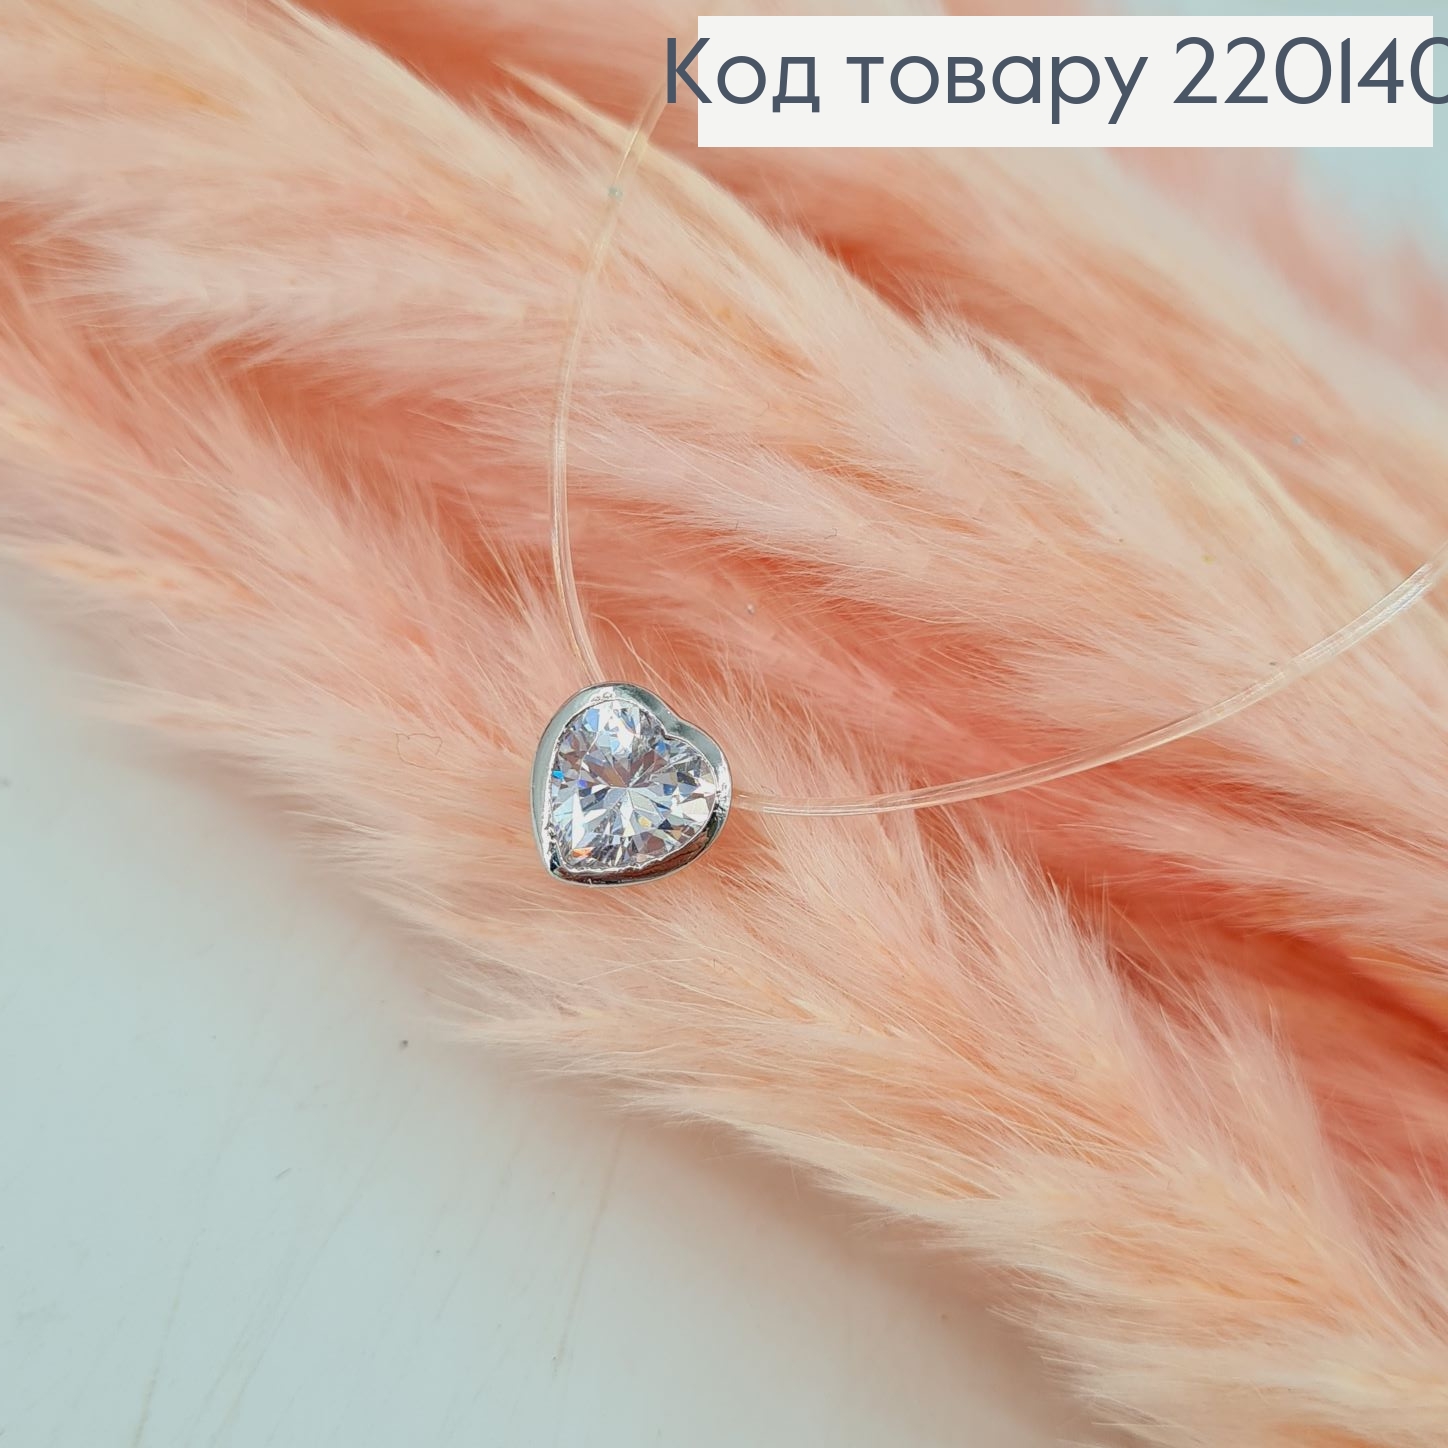 Жилка  з камінцем сердце  40+5 см родоване  Xuping 220140 фото 2